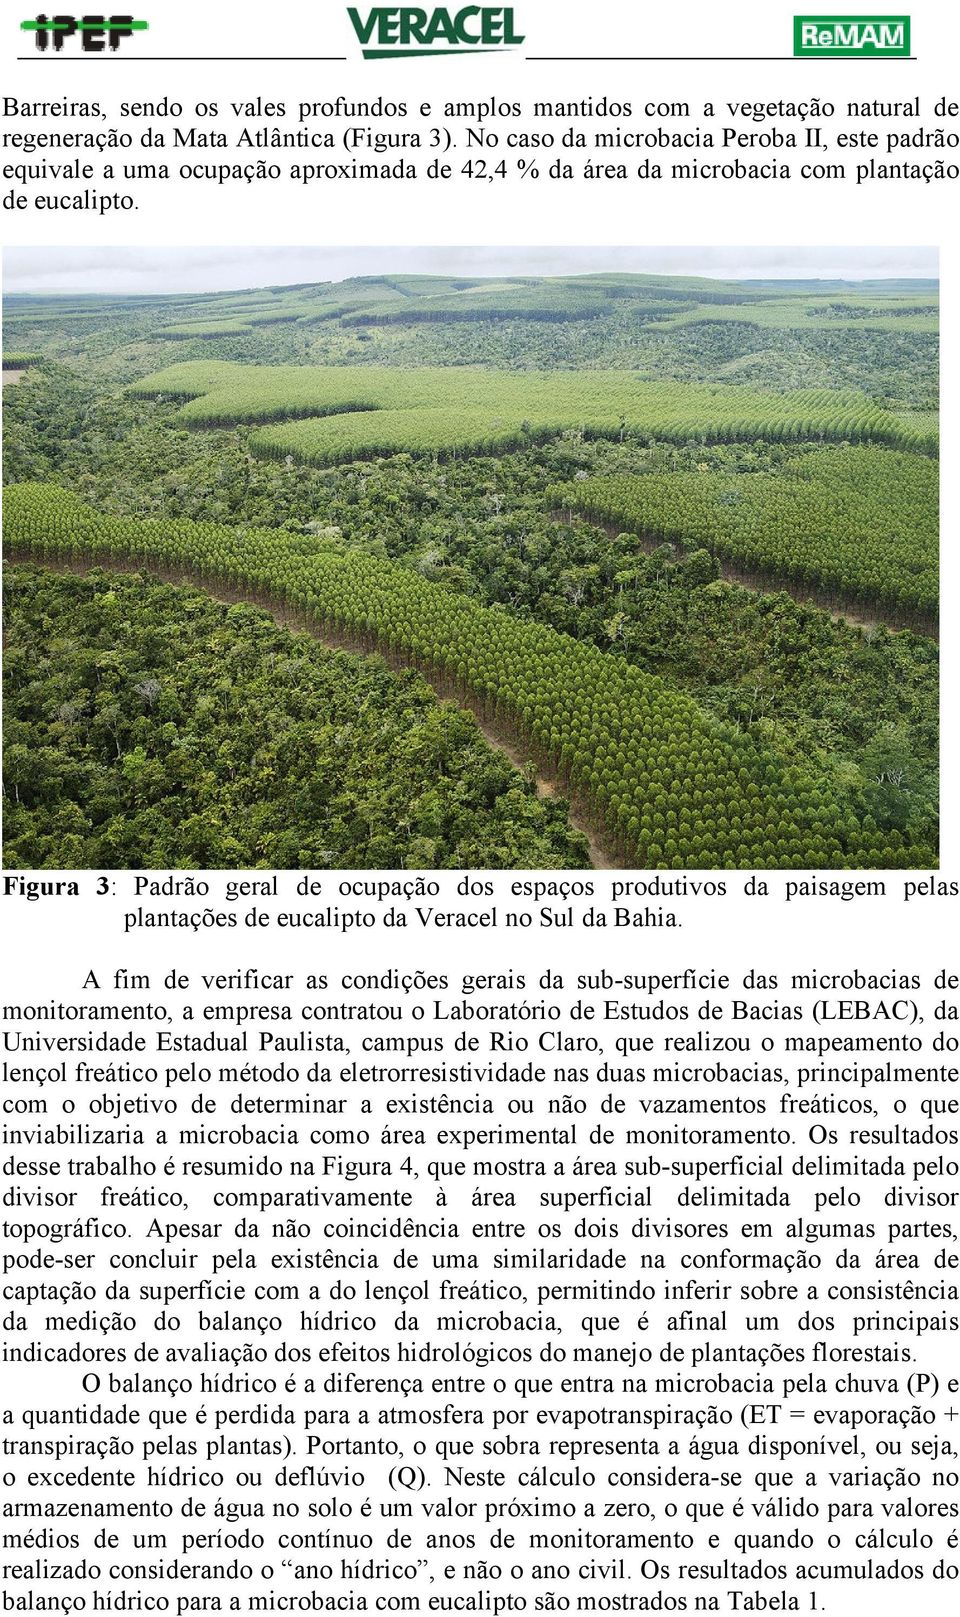 Figura 3: Padrão geral de ocupação dos espaços produtivos da paisagem pelas plantações de eucalipto da Veracel no Sul da Bahia.